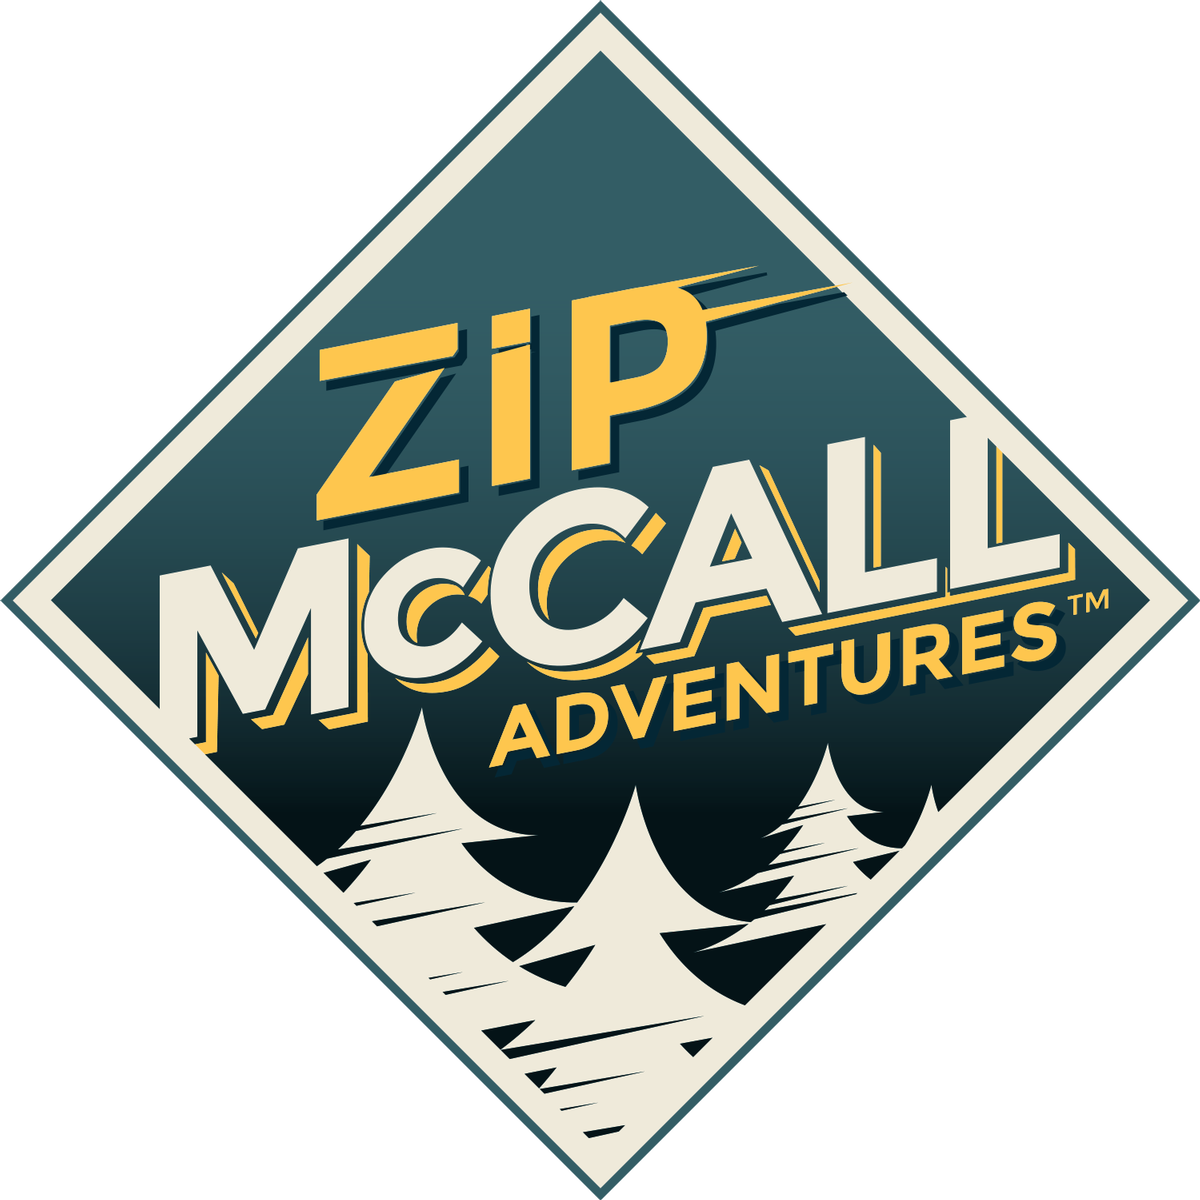 Ebl's Newest Zip Line Tour Is Now Open New Zips, Higher - Zip Mccall (1200x1200), Png Download